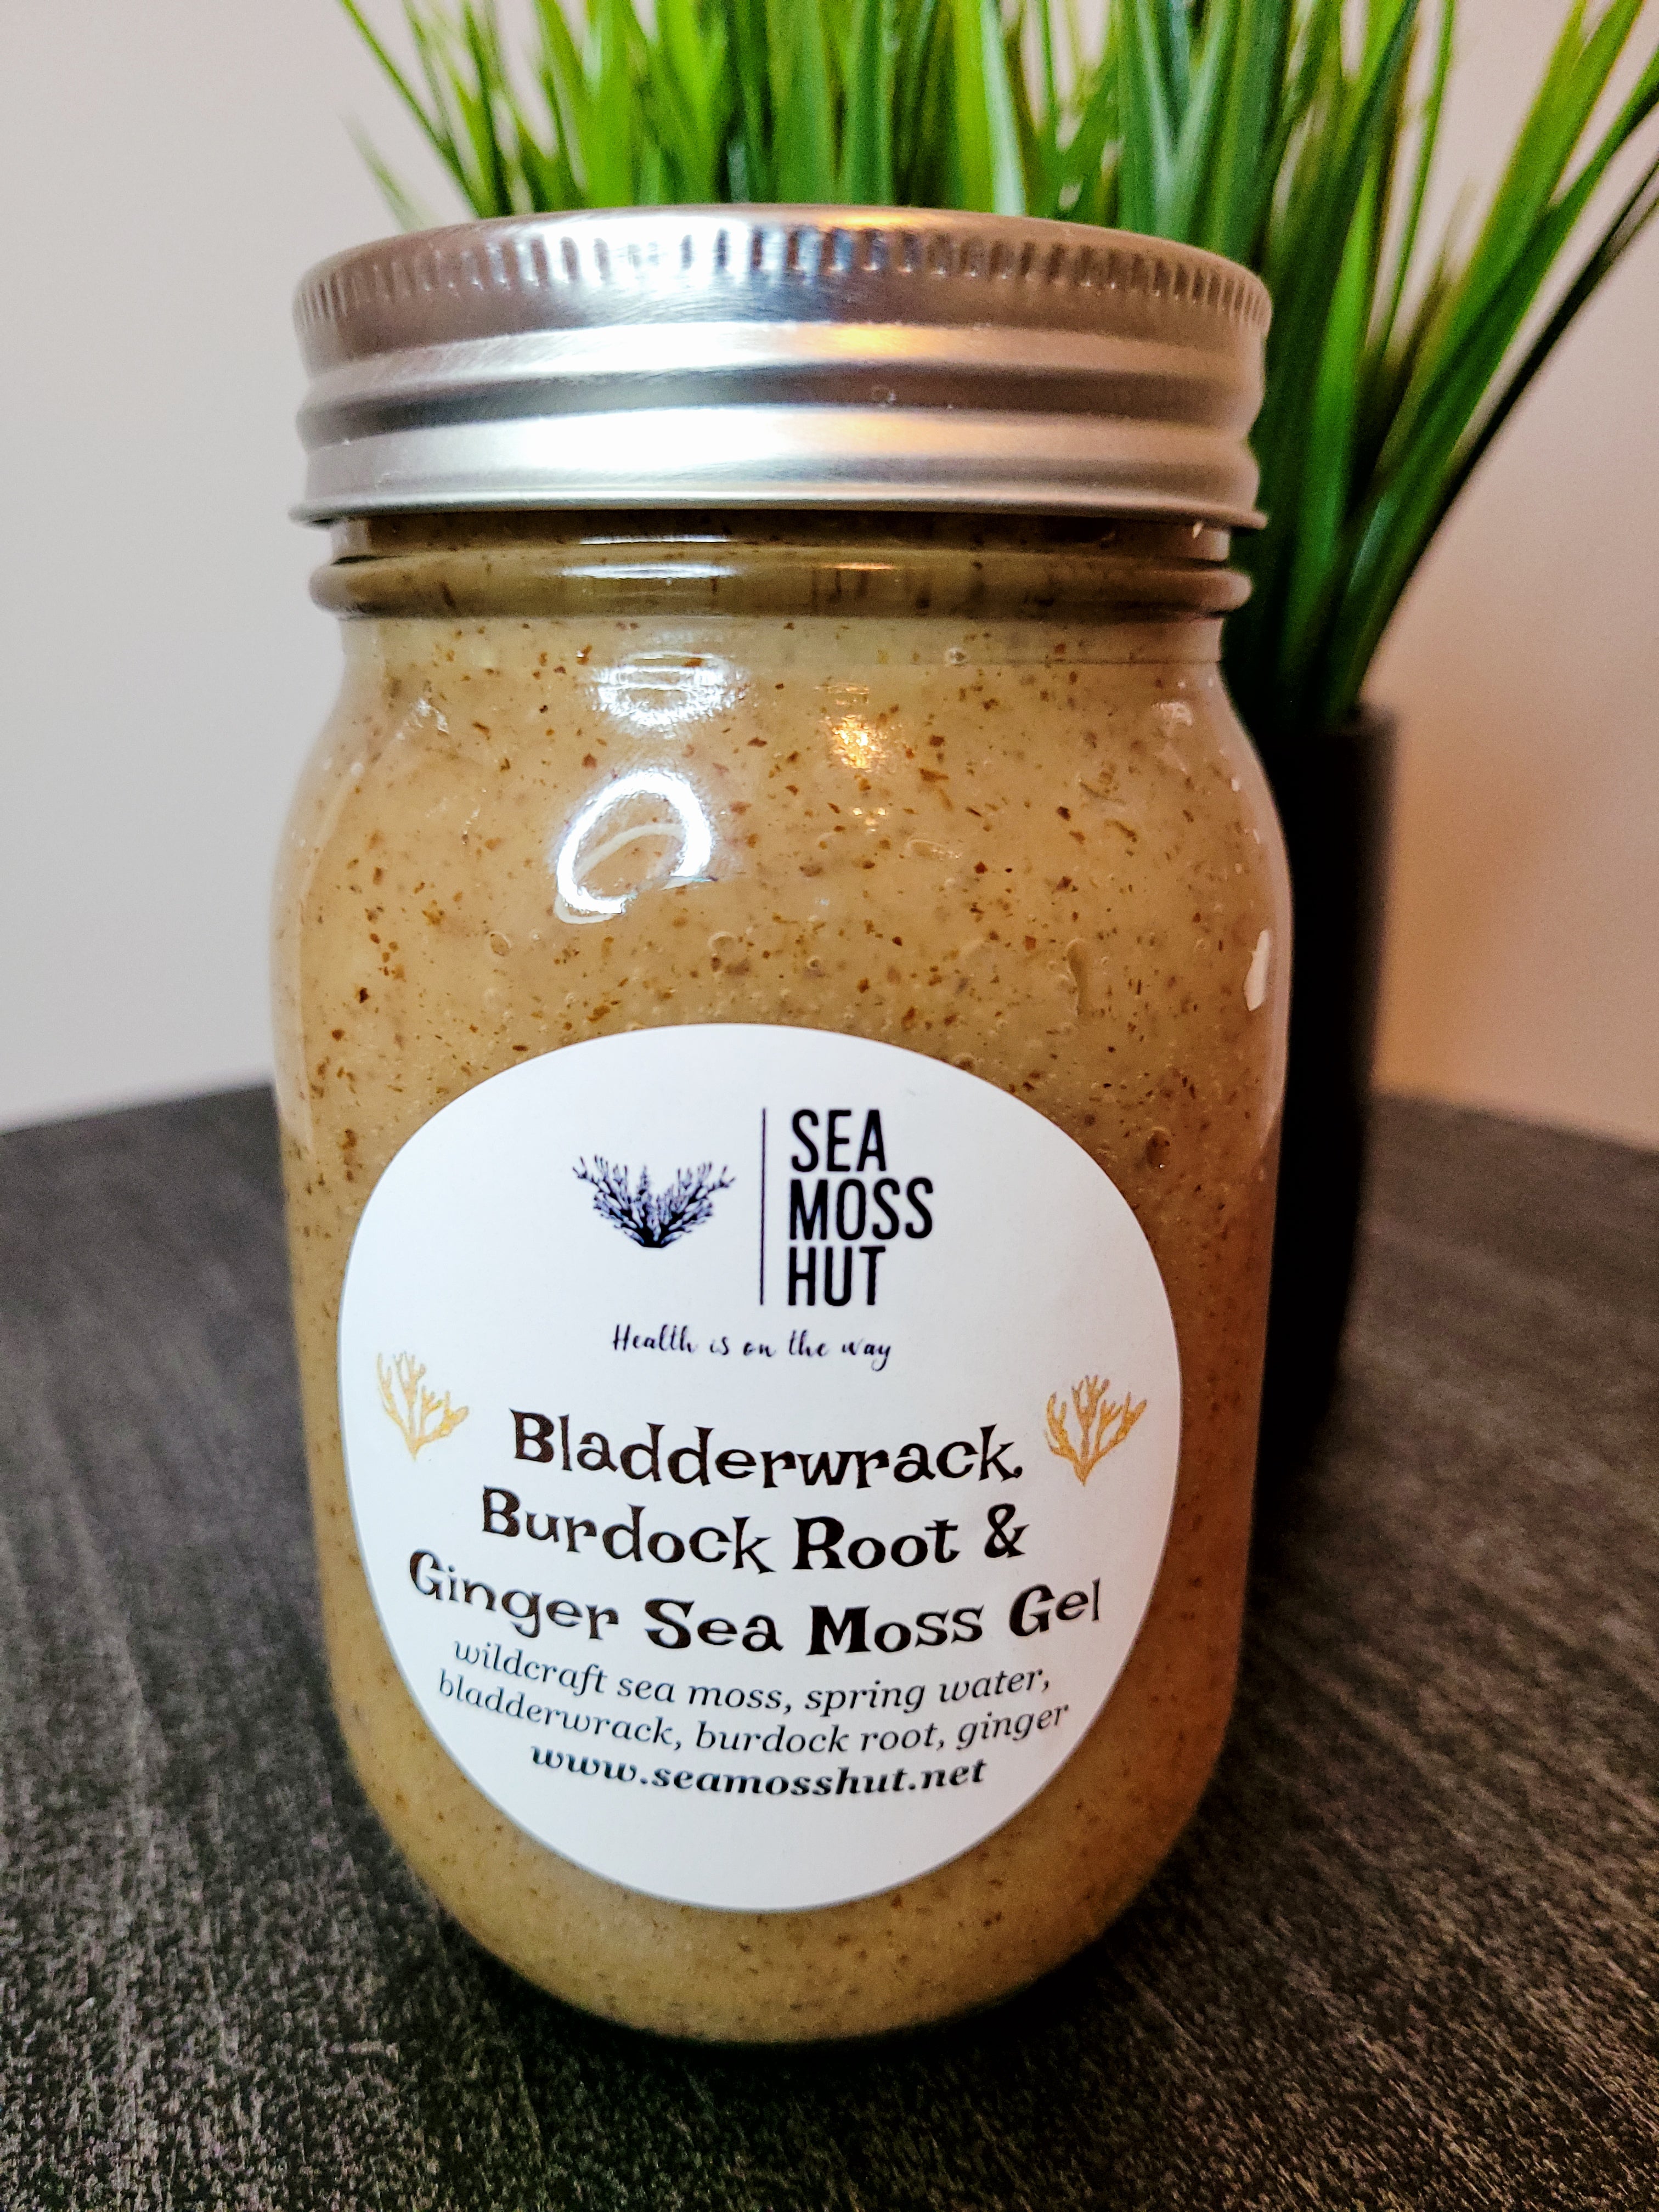 Bladderwrack, Burdock Root & Ginger Sea Moss Gel